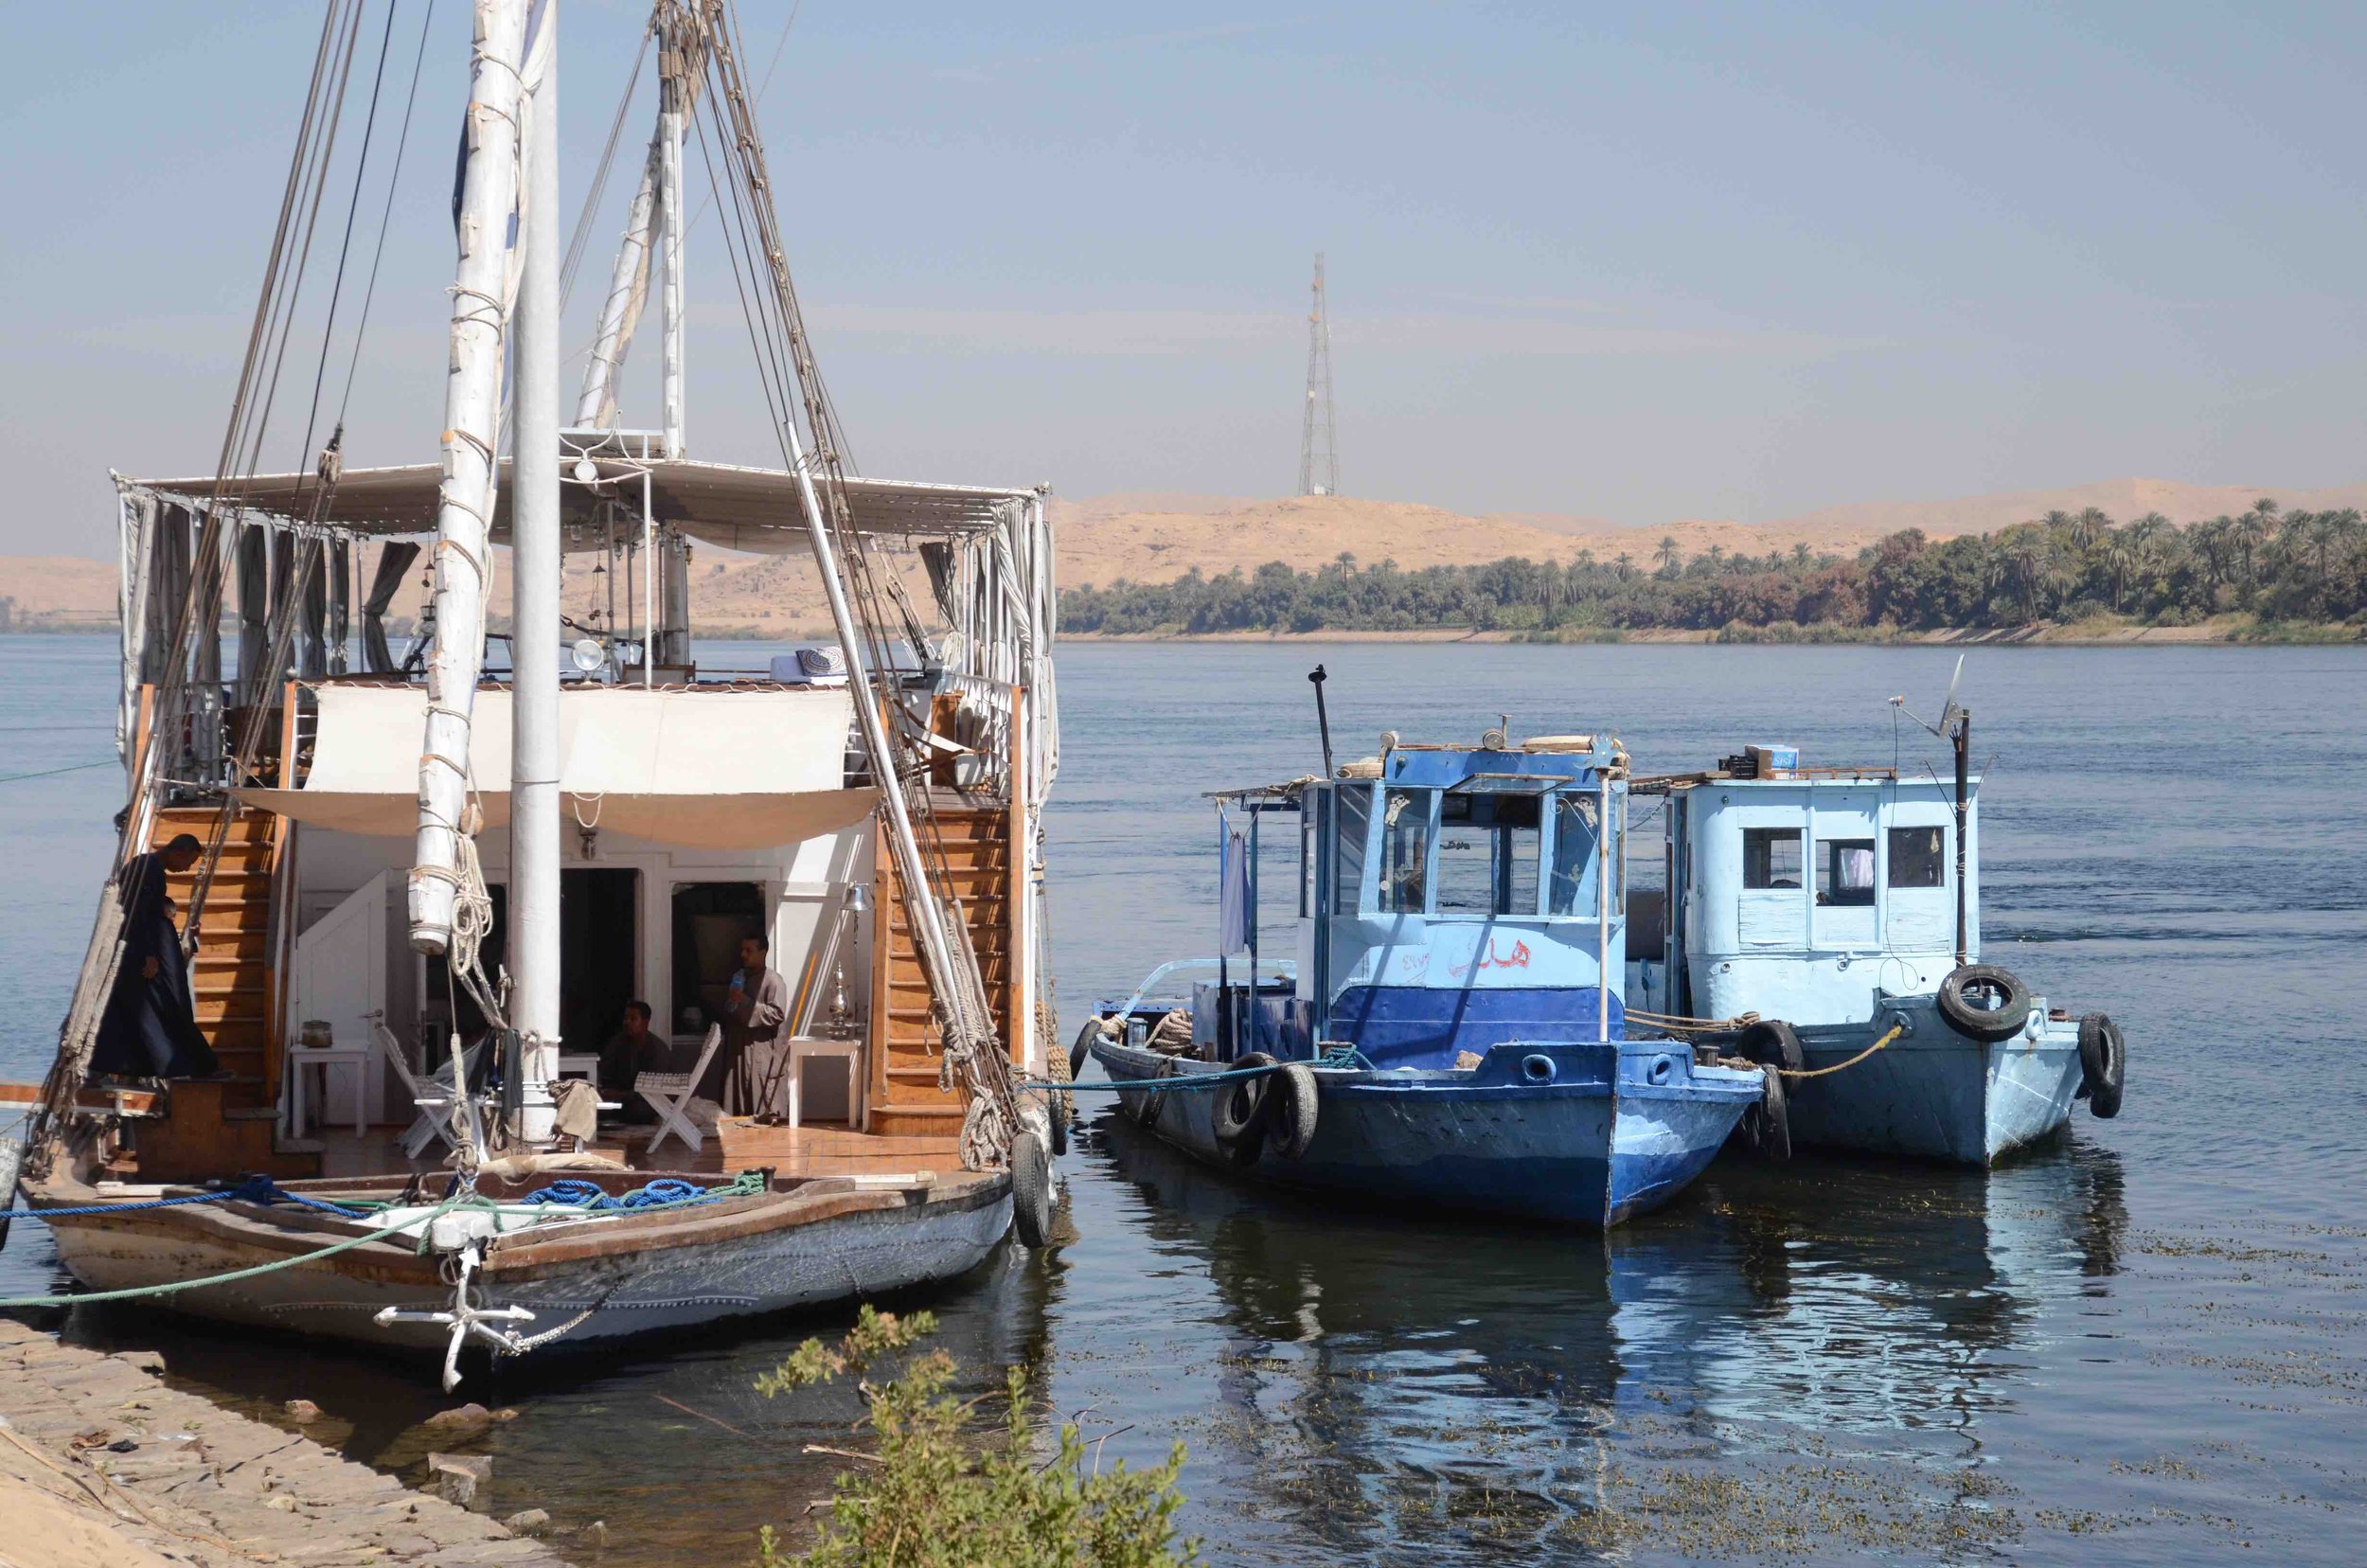 Tug Boats on the Nile.jpg